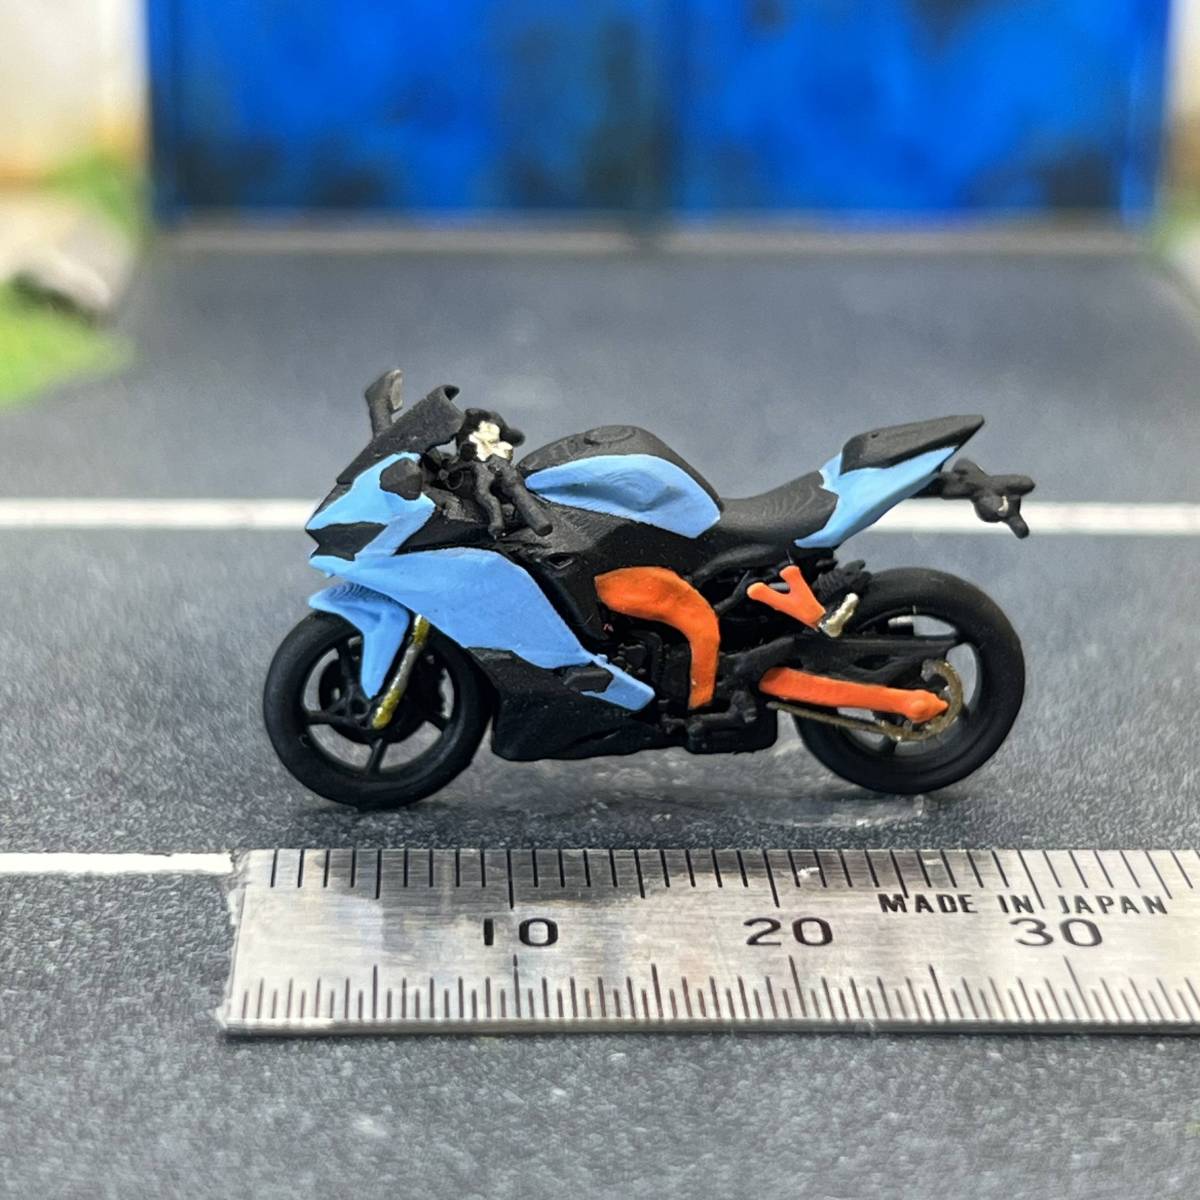 【ZZ-607】1/64 スケール カワサキ Ninja ZX-25R バイク フィギュア ミニチュア ジオラマ ミニカー トミカ_画像1